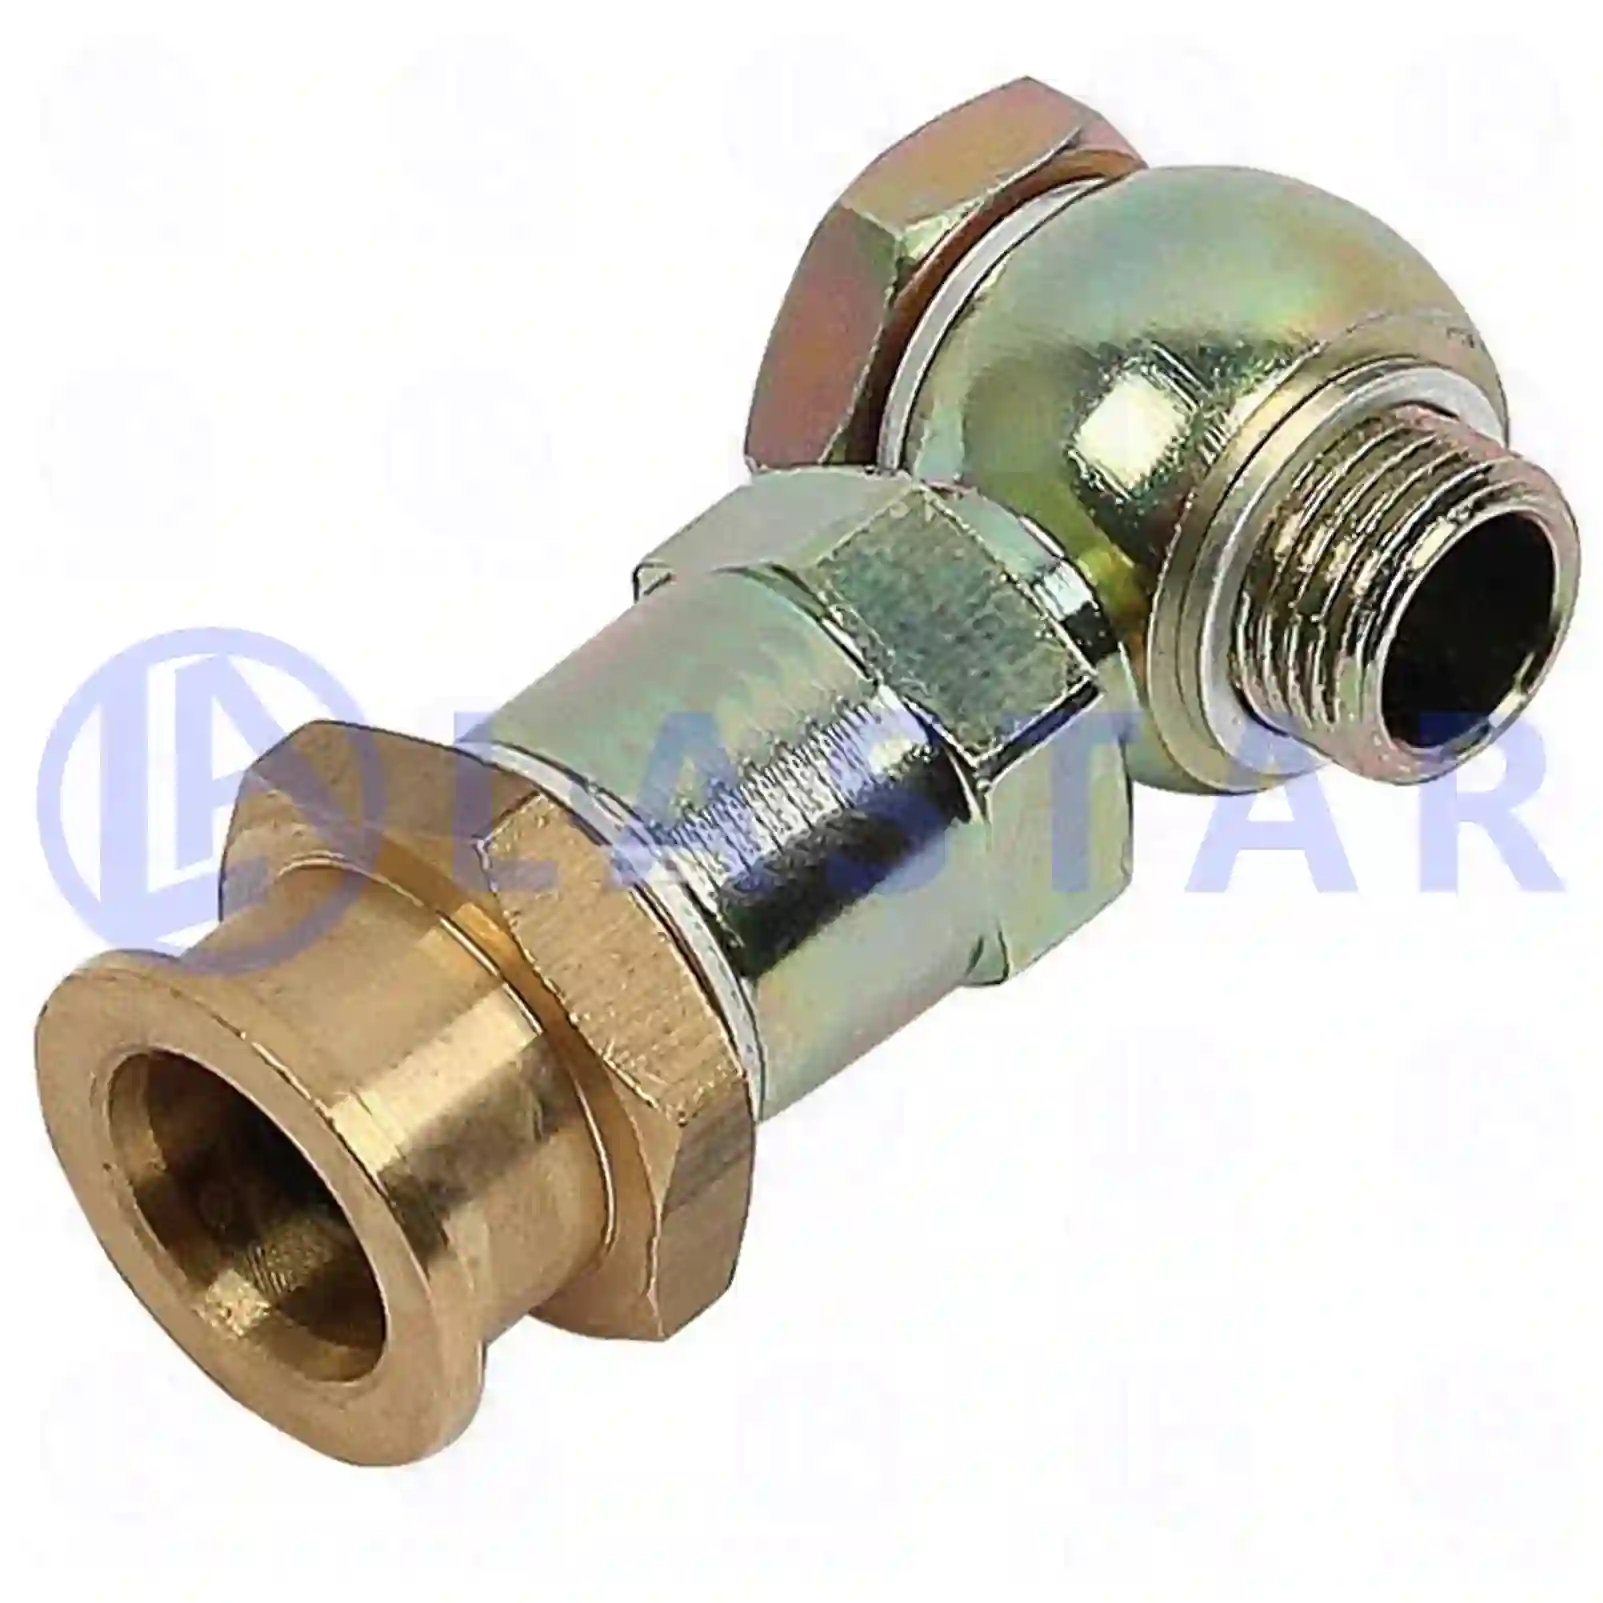 Injection Pump Overflow valve, la no: 77723810 ,  oem no:4570980257 Lastar Spare Part | Truck Spare Parts, Auotomotive Spare Parts